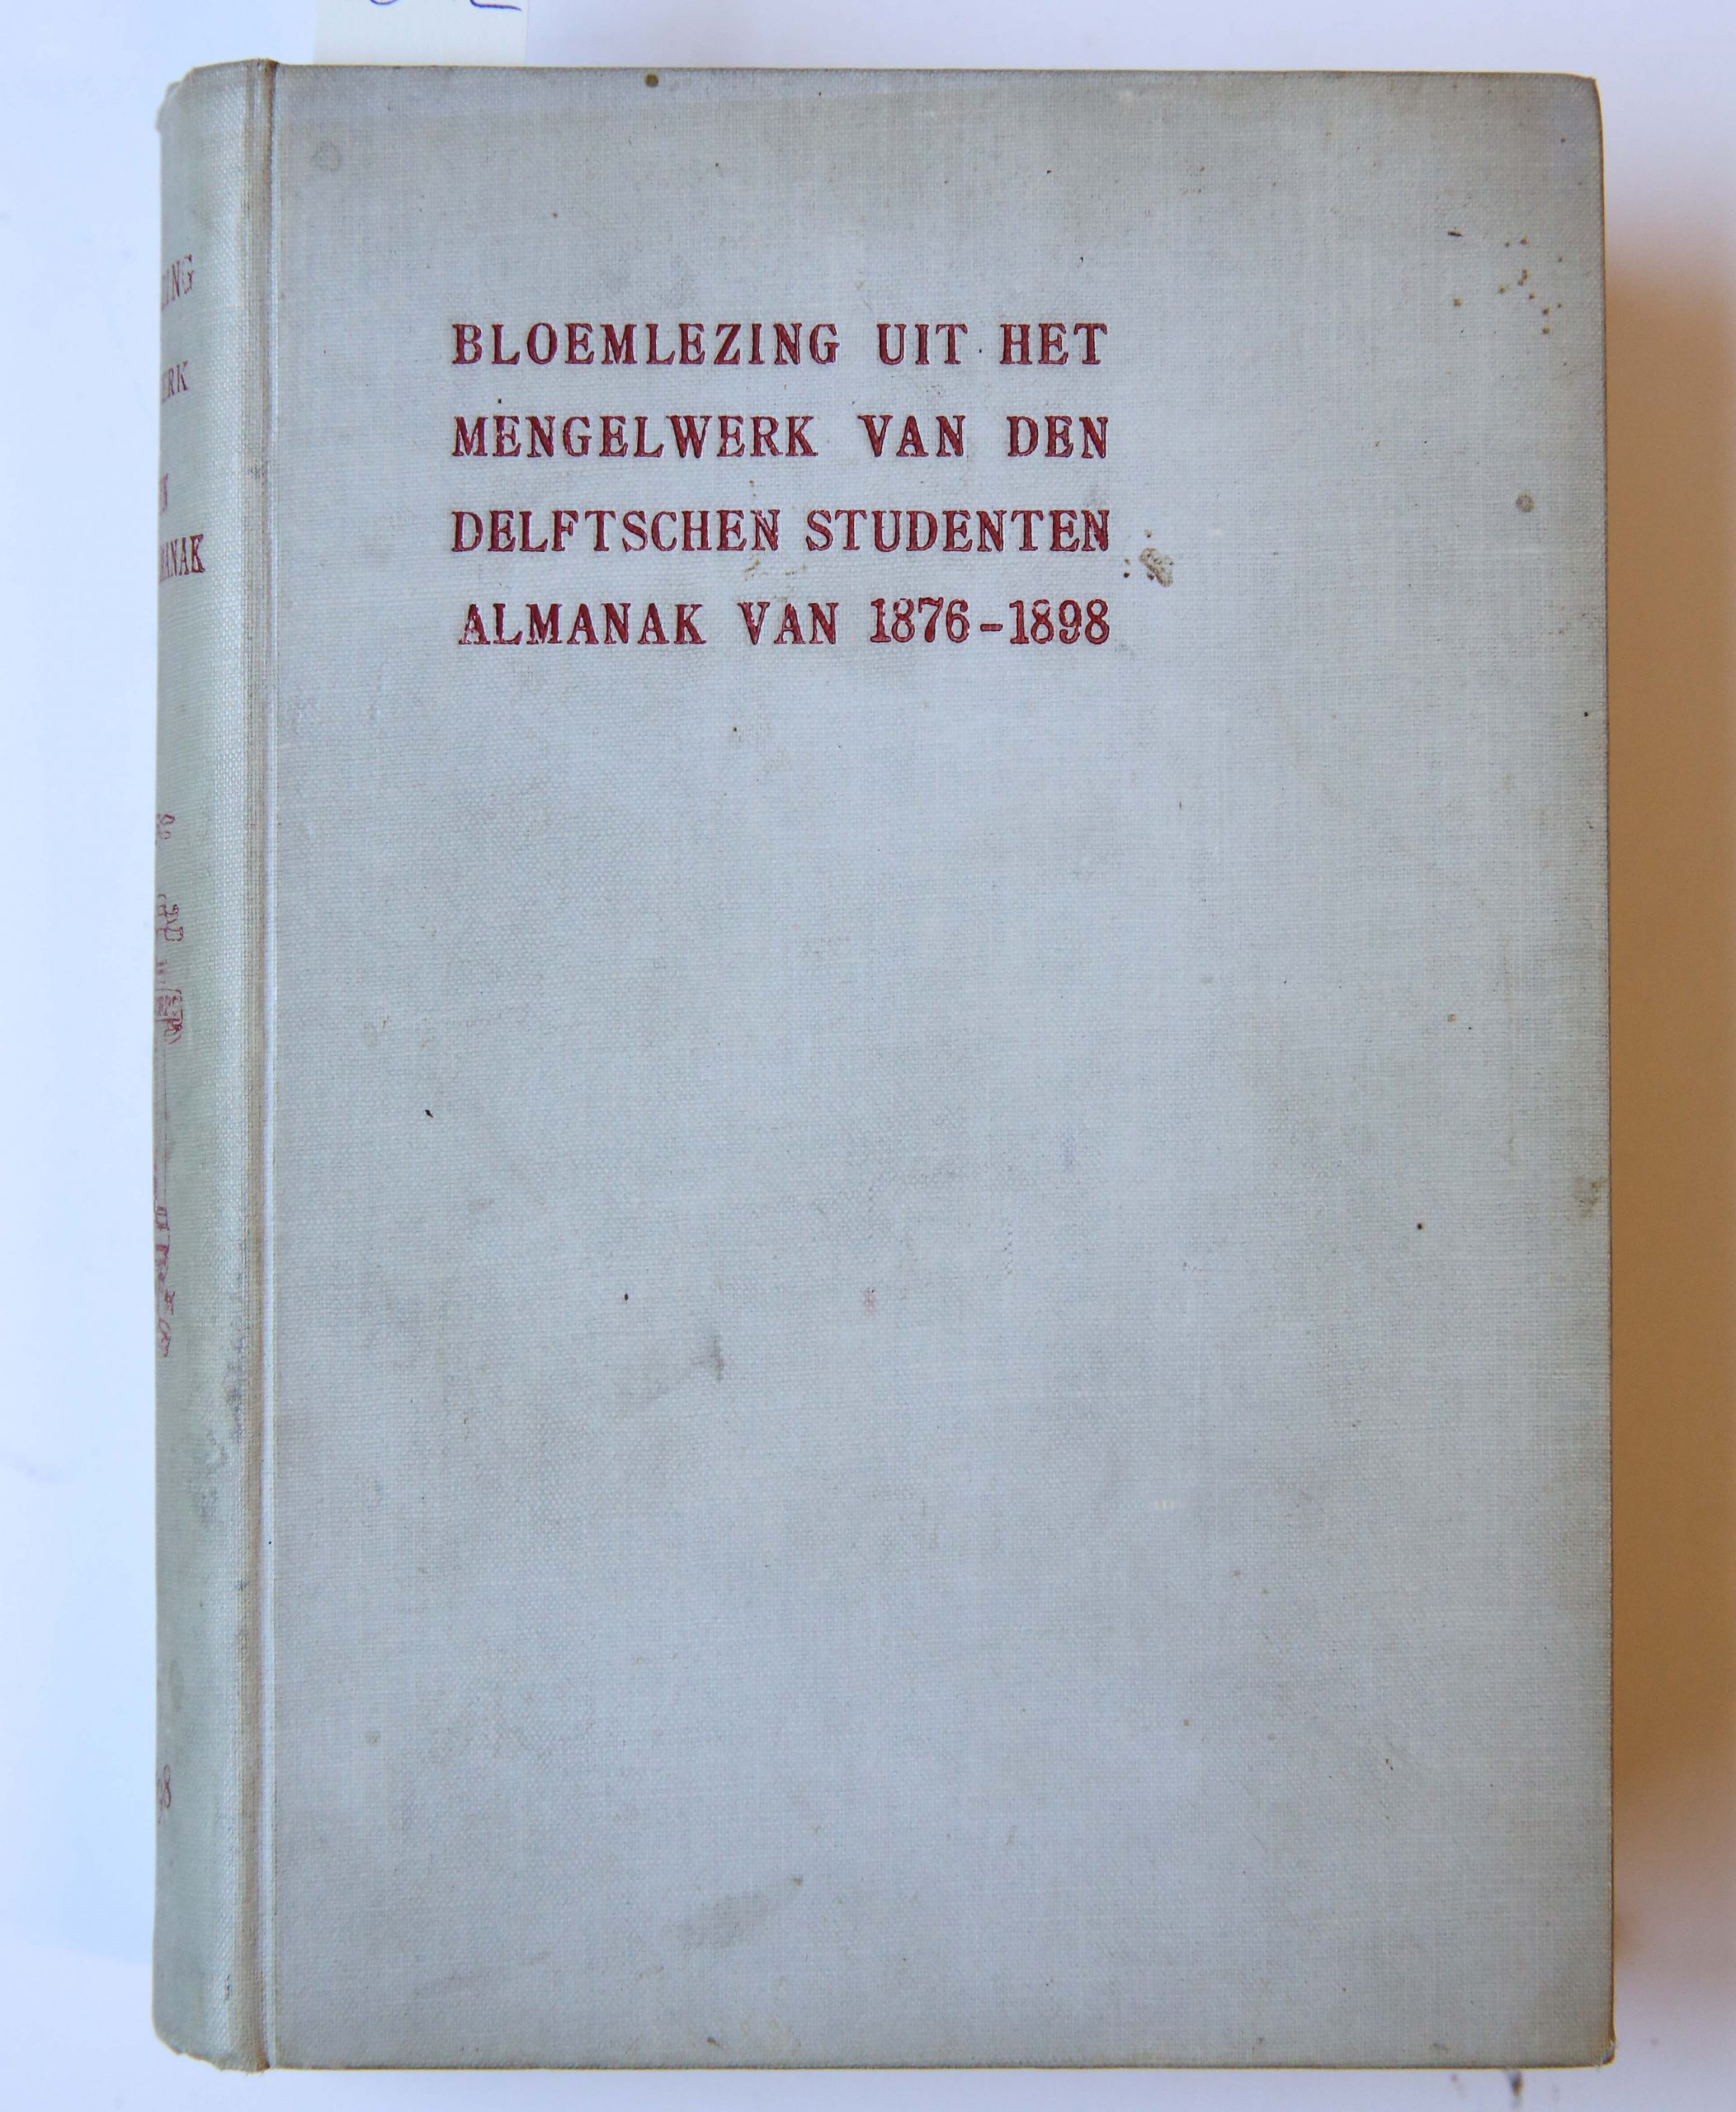 Bloemlezing uit het mengelwerk van den Delftschen Studenten Almanak 1875-1898, J. Waltman jr. Delft 1898, 401 pp.